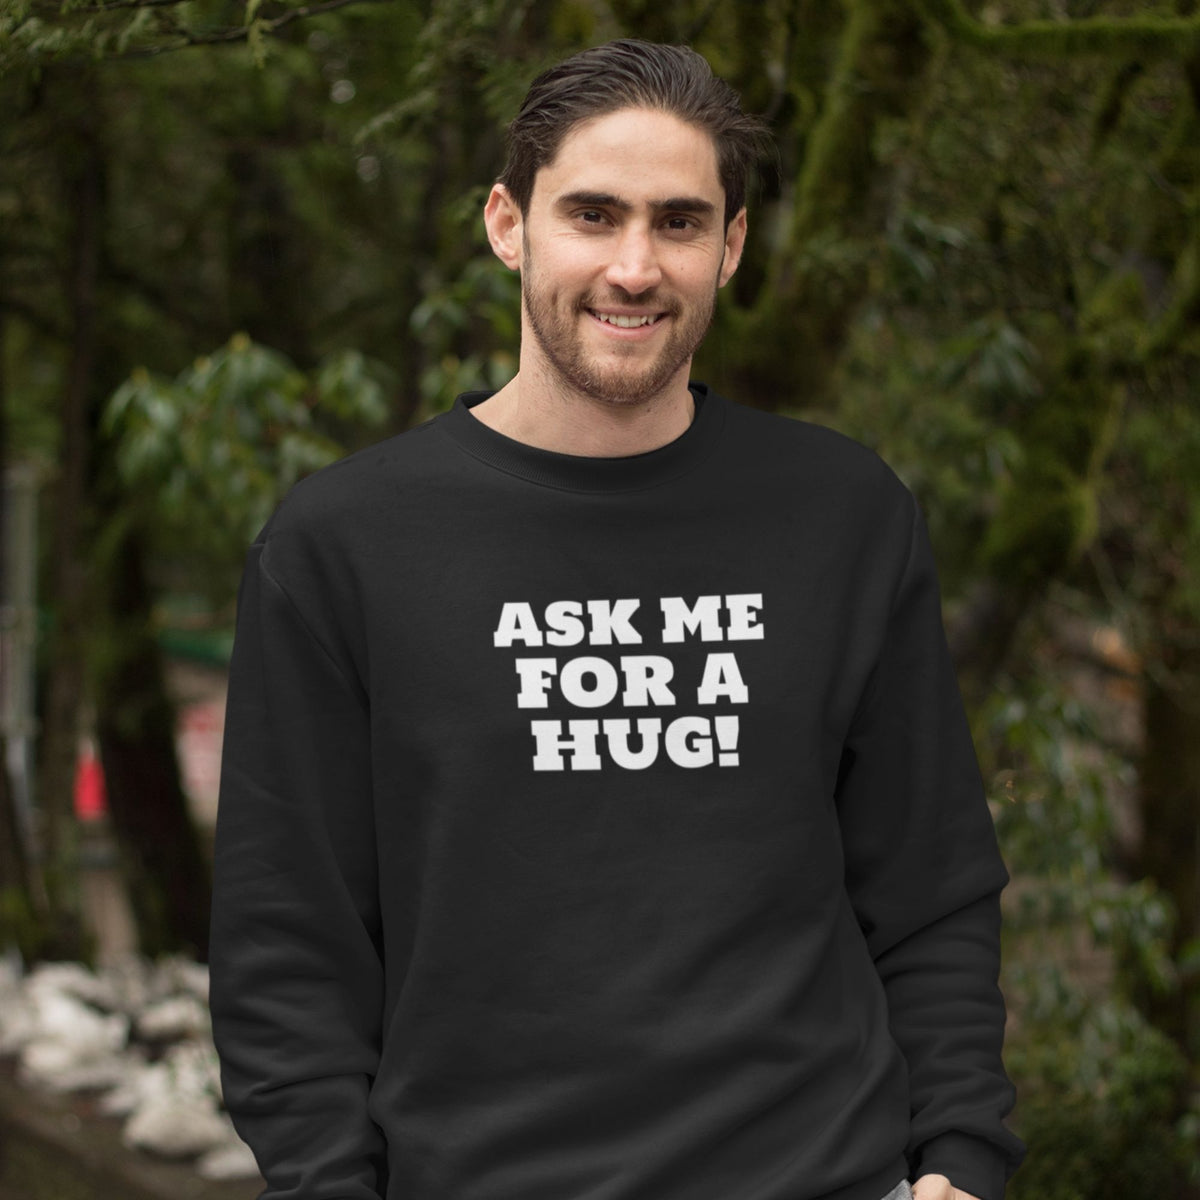 Ask me for a hug. T-Shirt